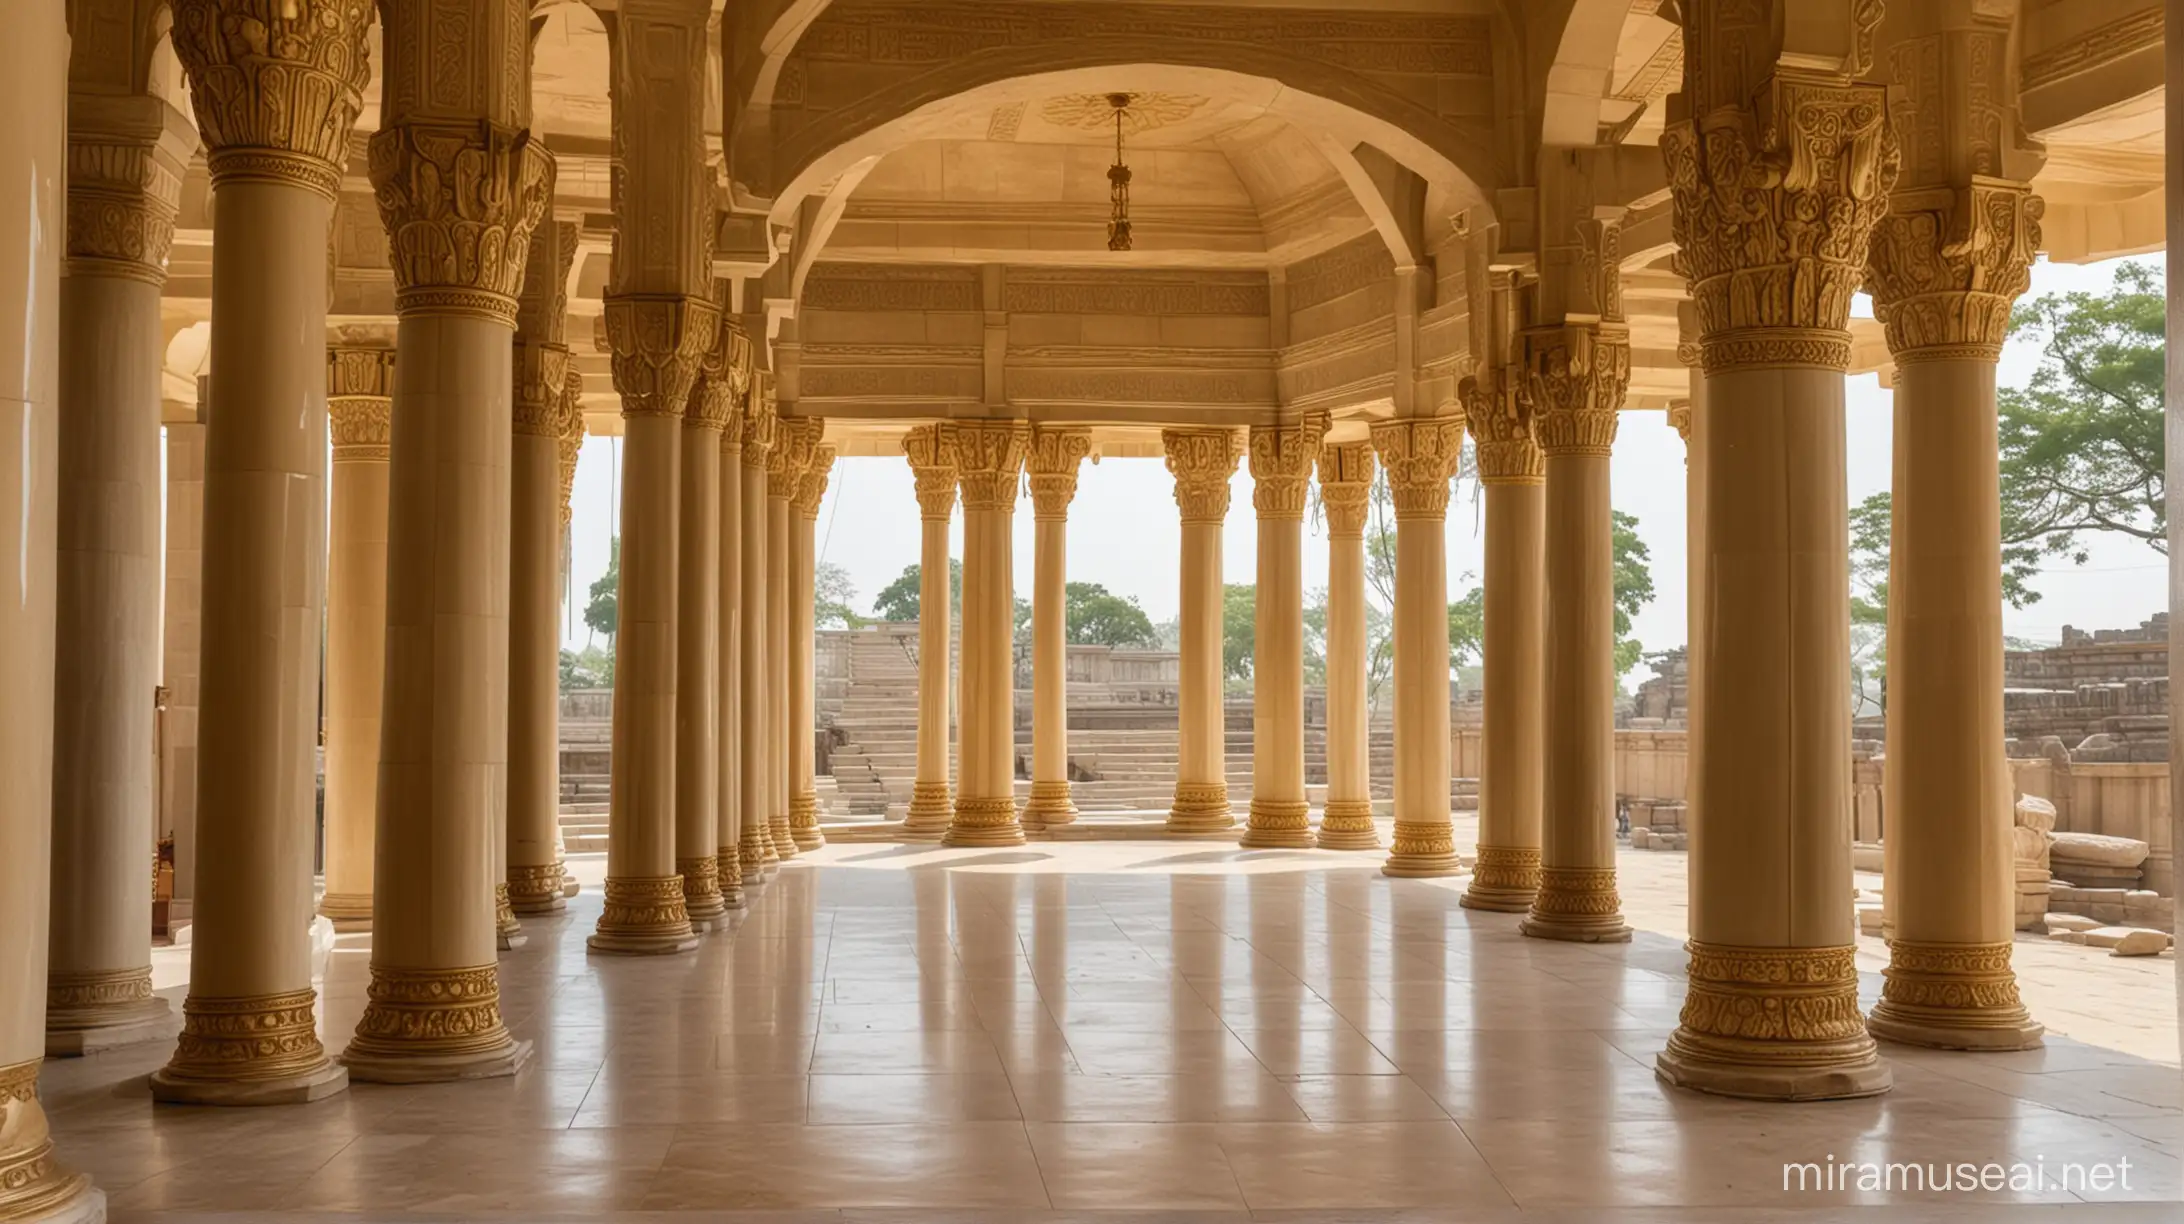 Templo puntita visto desde adentro con columnas que tienen forma de pergamino enrollado, y las columnas también tienen adornos de oro.